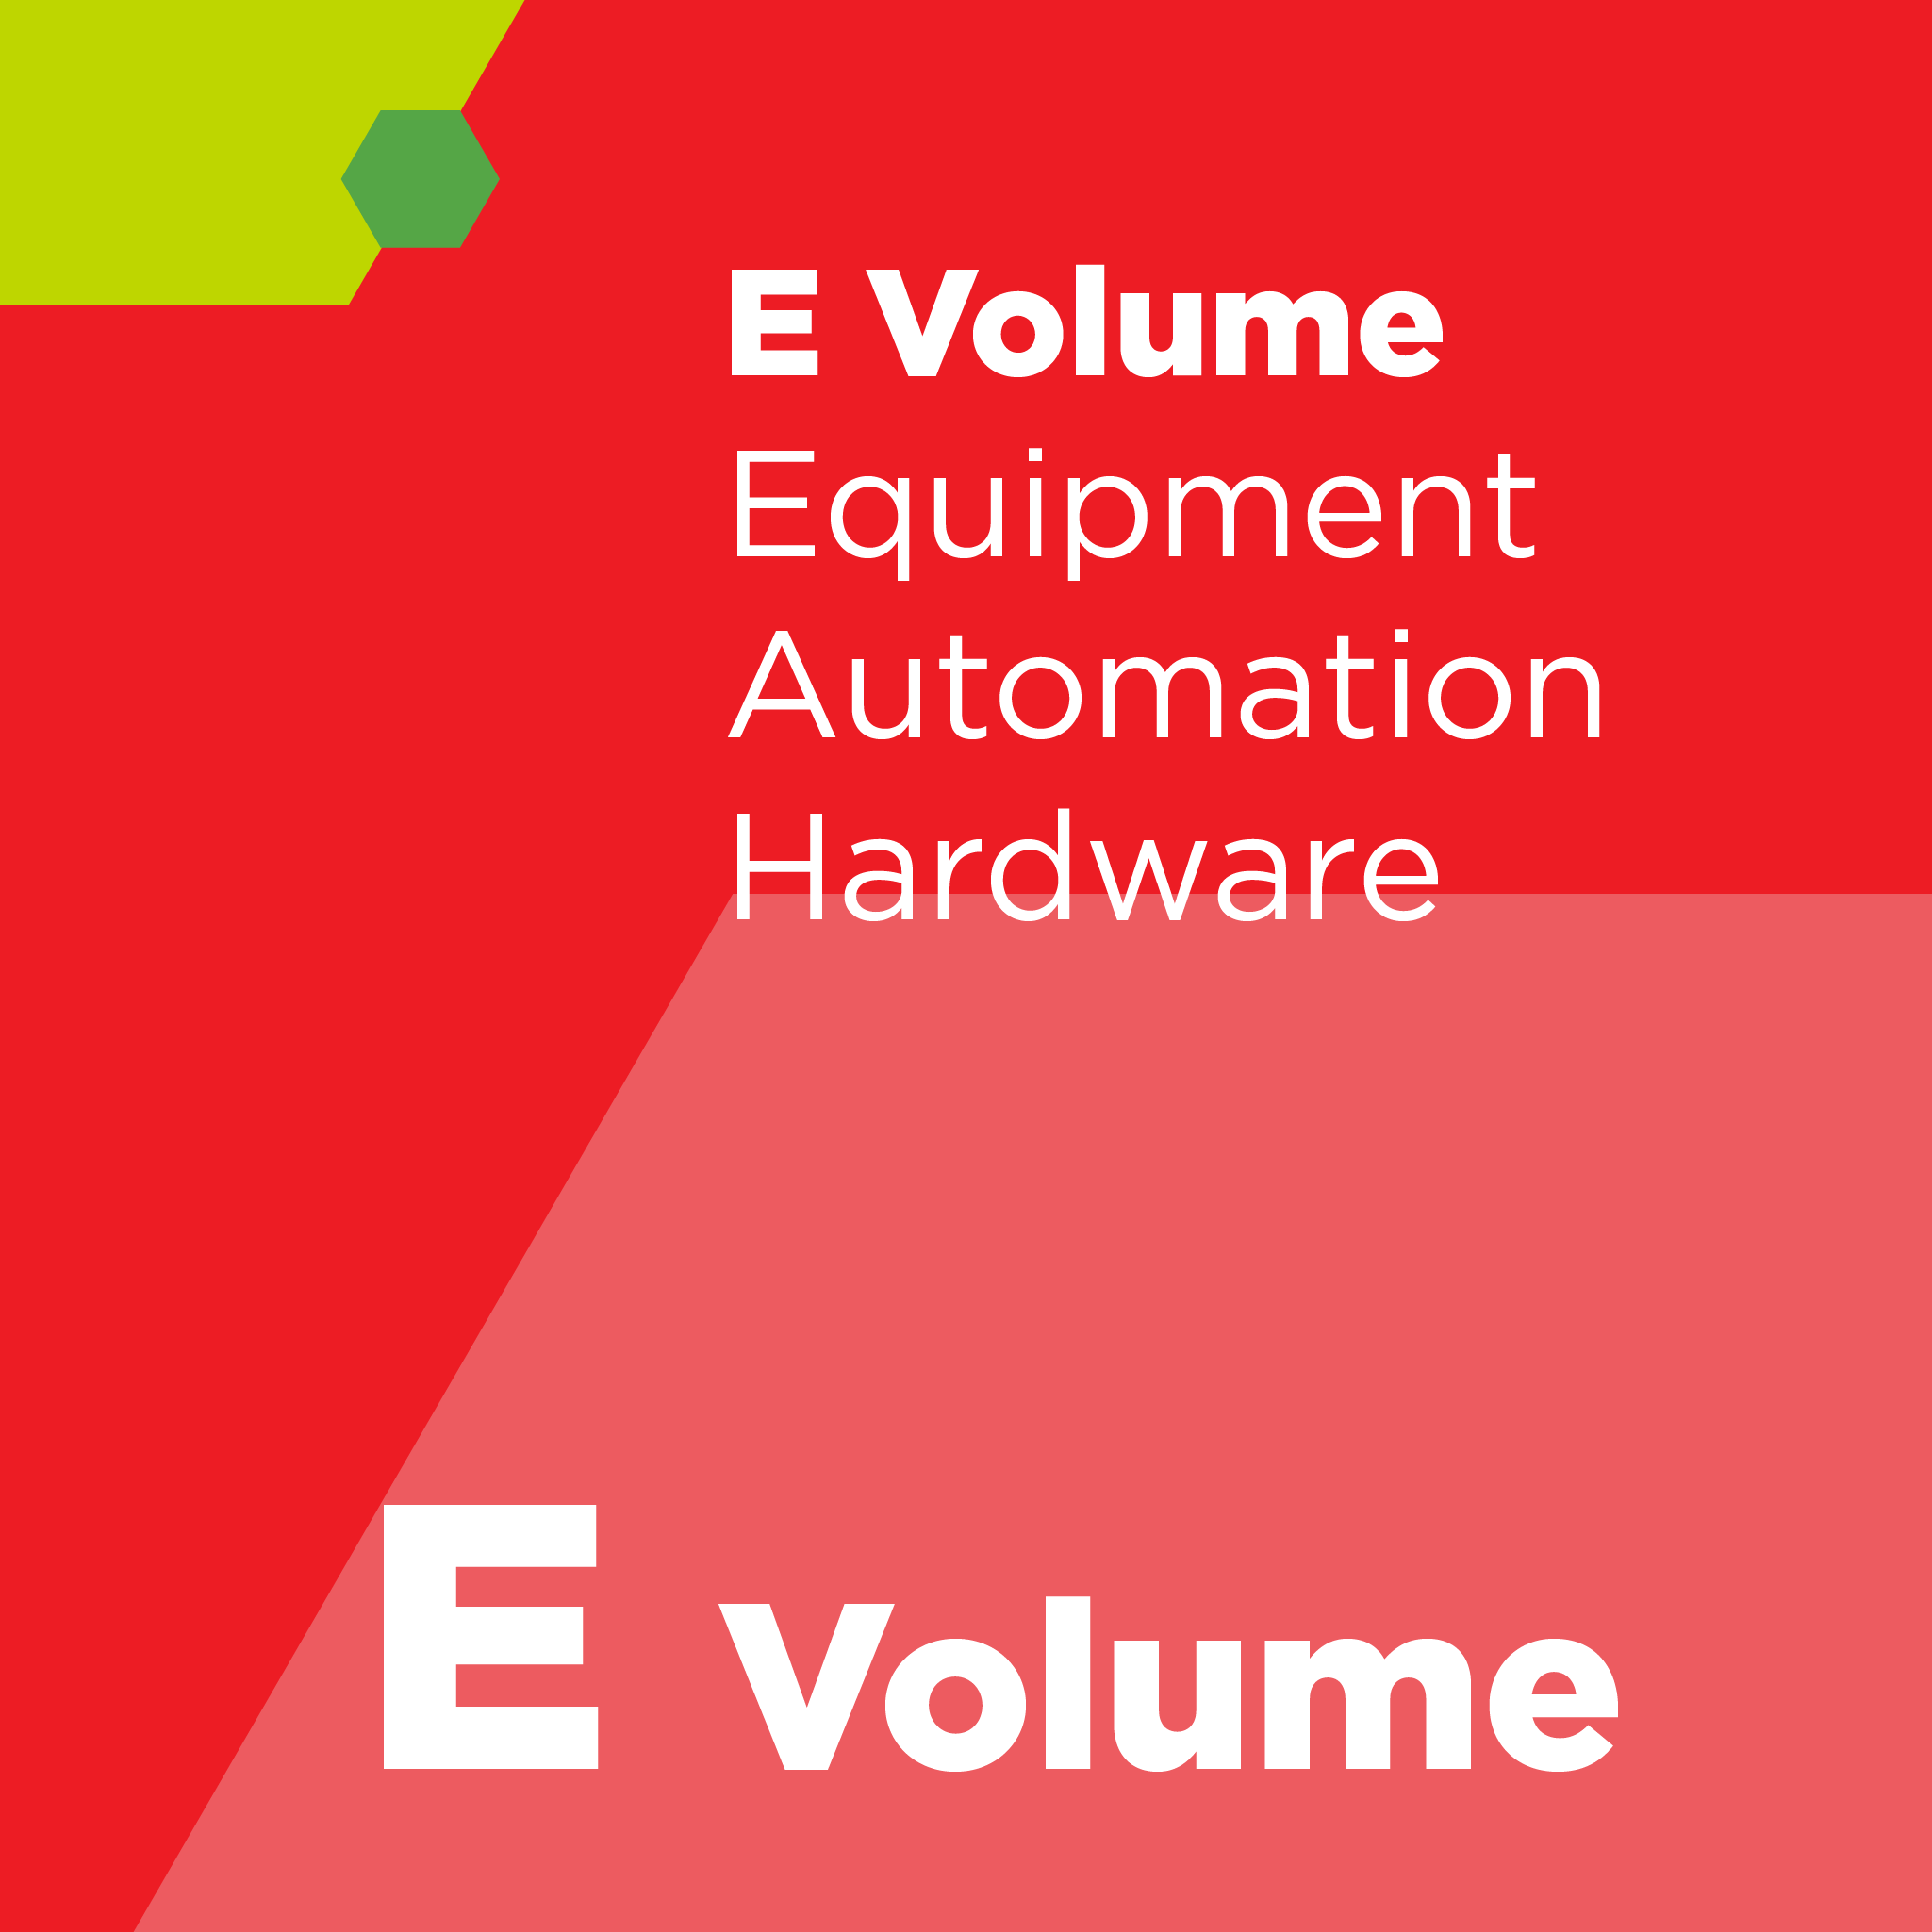 E03300 - SEMI E33 - 半導体製造装置の電磁適合性（EMC）のためのガイド